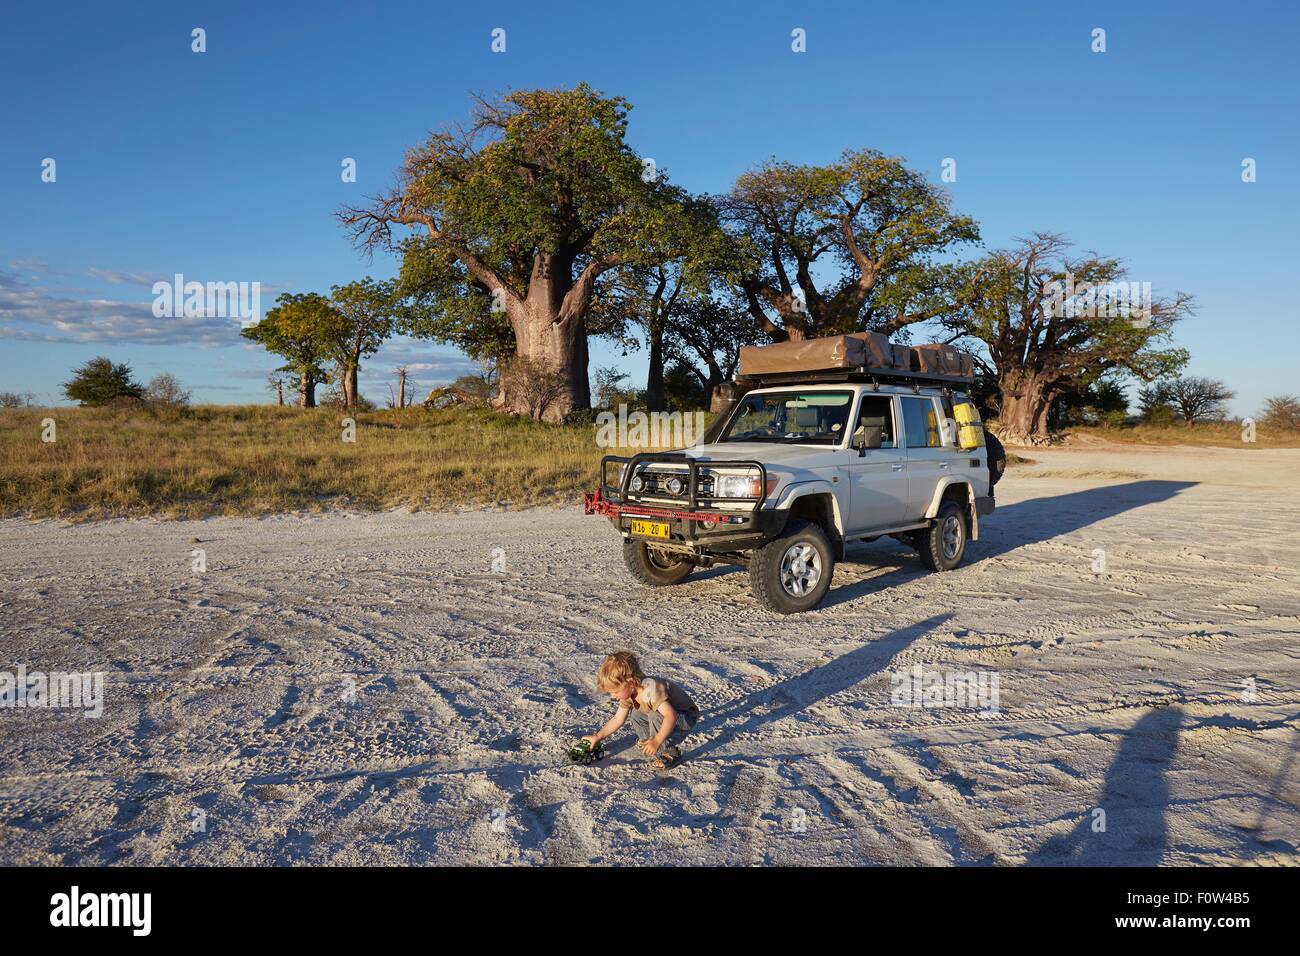 Garçon jouant par véhicule, Parc National de Nxai Pan, Désert du Kalahari, Afrique Banque D'Images